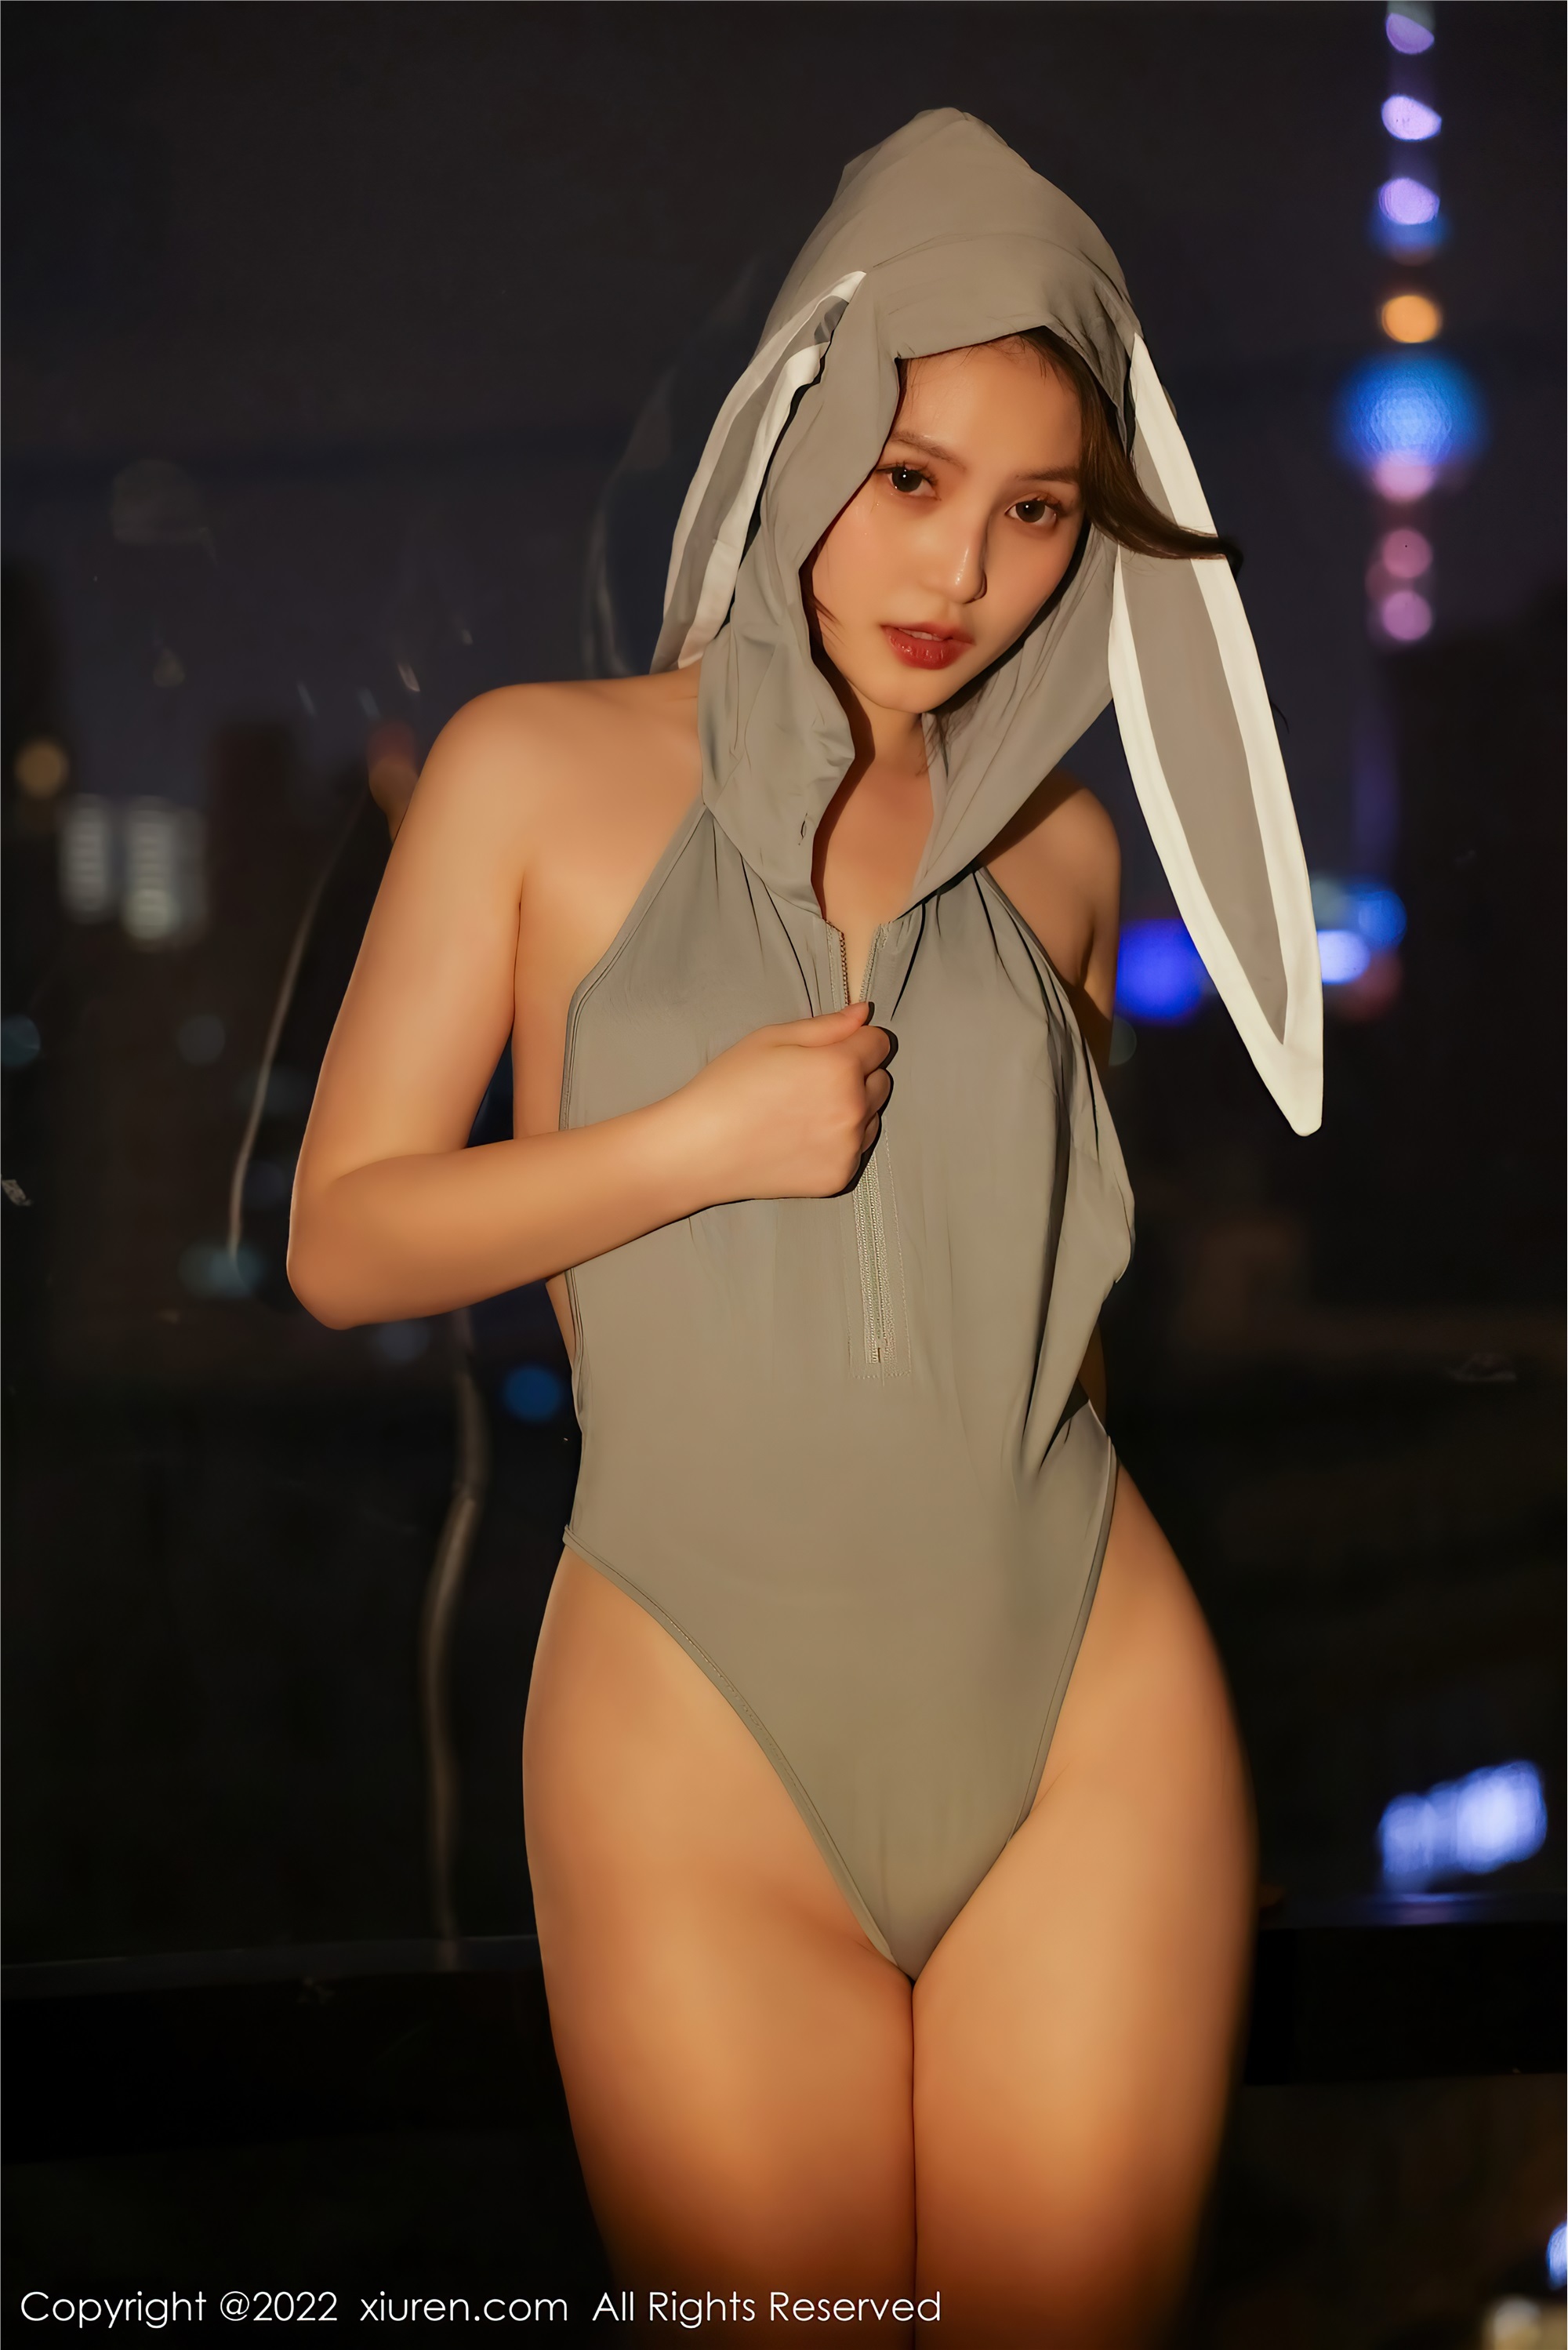 Xiuren: Your bunny sister